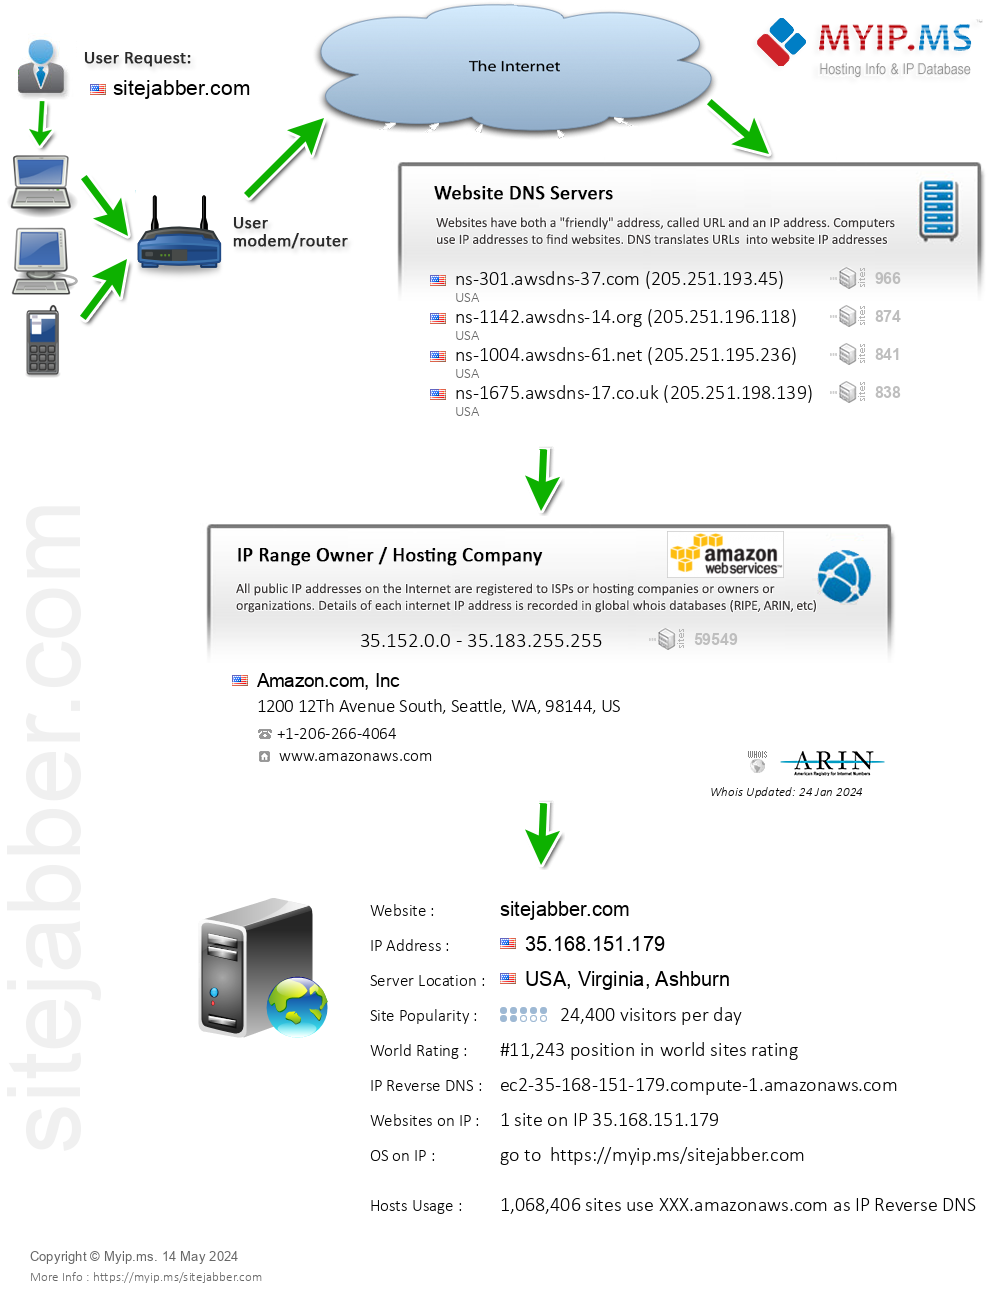 Sitejabber.com - Website Hosting Visual IP Diagram